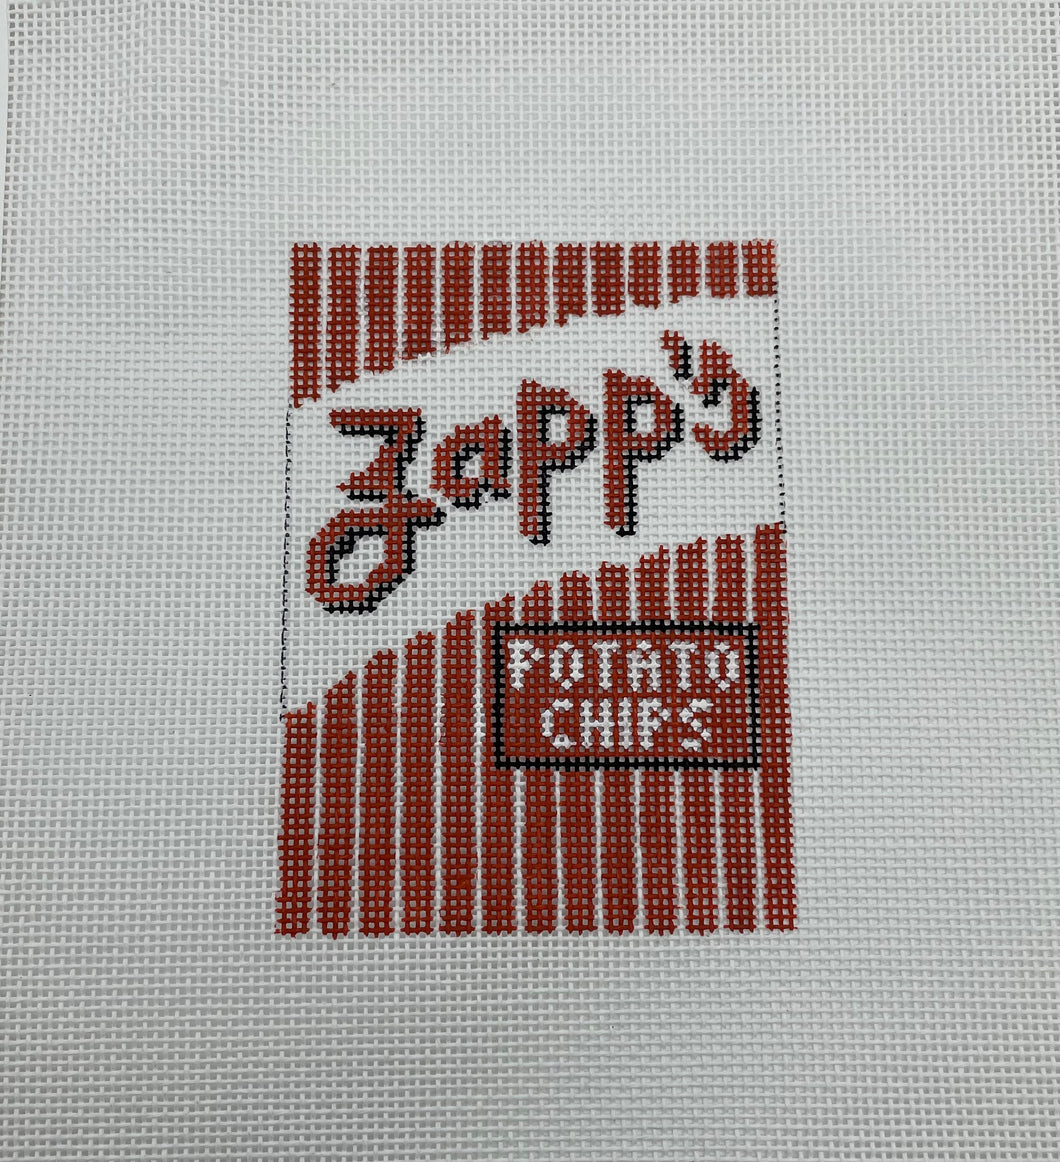 Zapp's Potato Chips Ornament